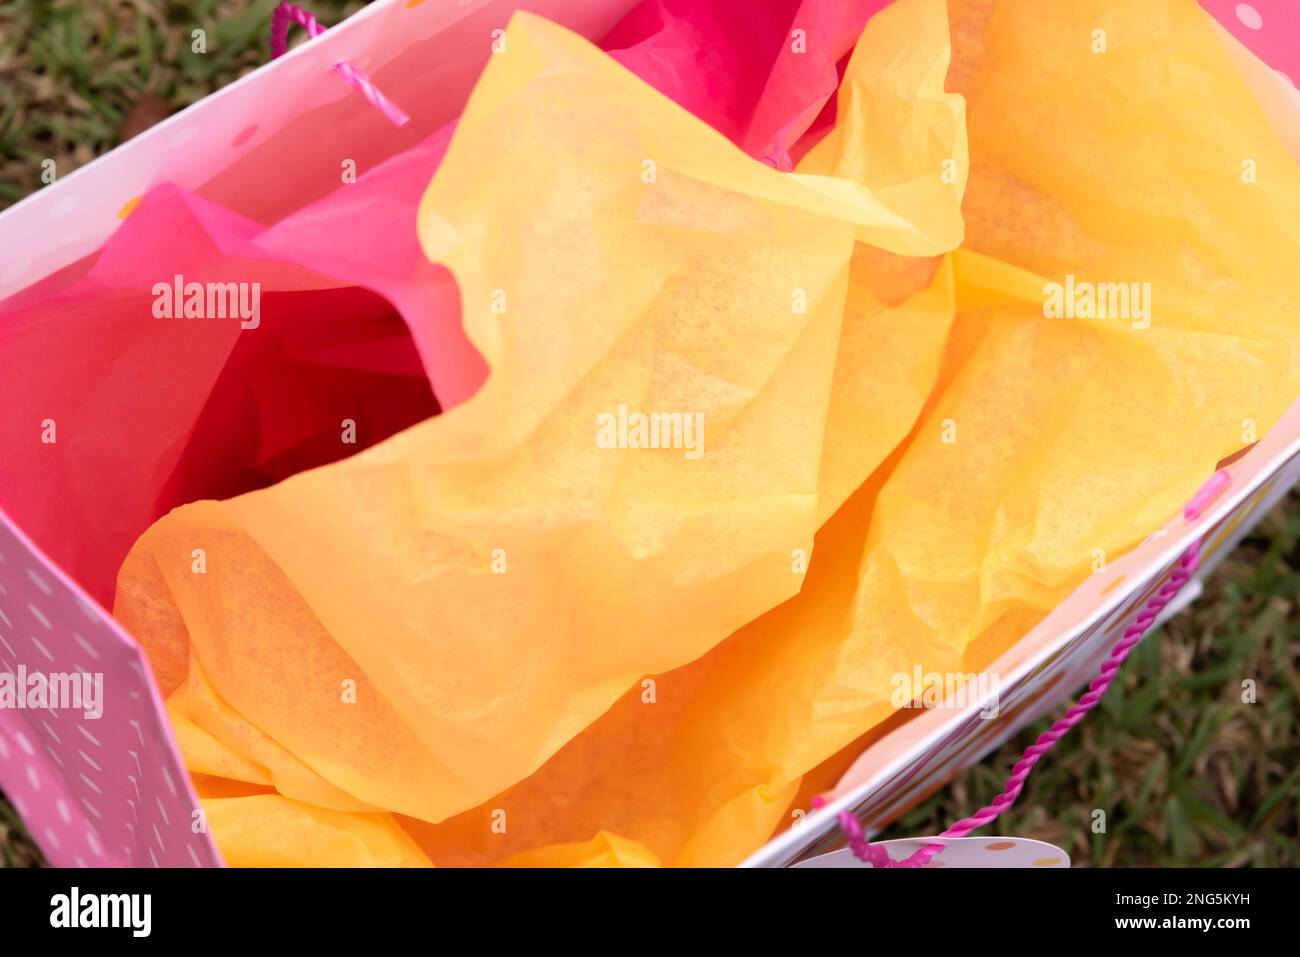 Vue de dessus du papier de soie rose et jaune dans le sac-cadeau vide laissé sur l'herbe Banque D'Images